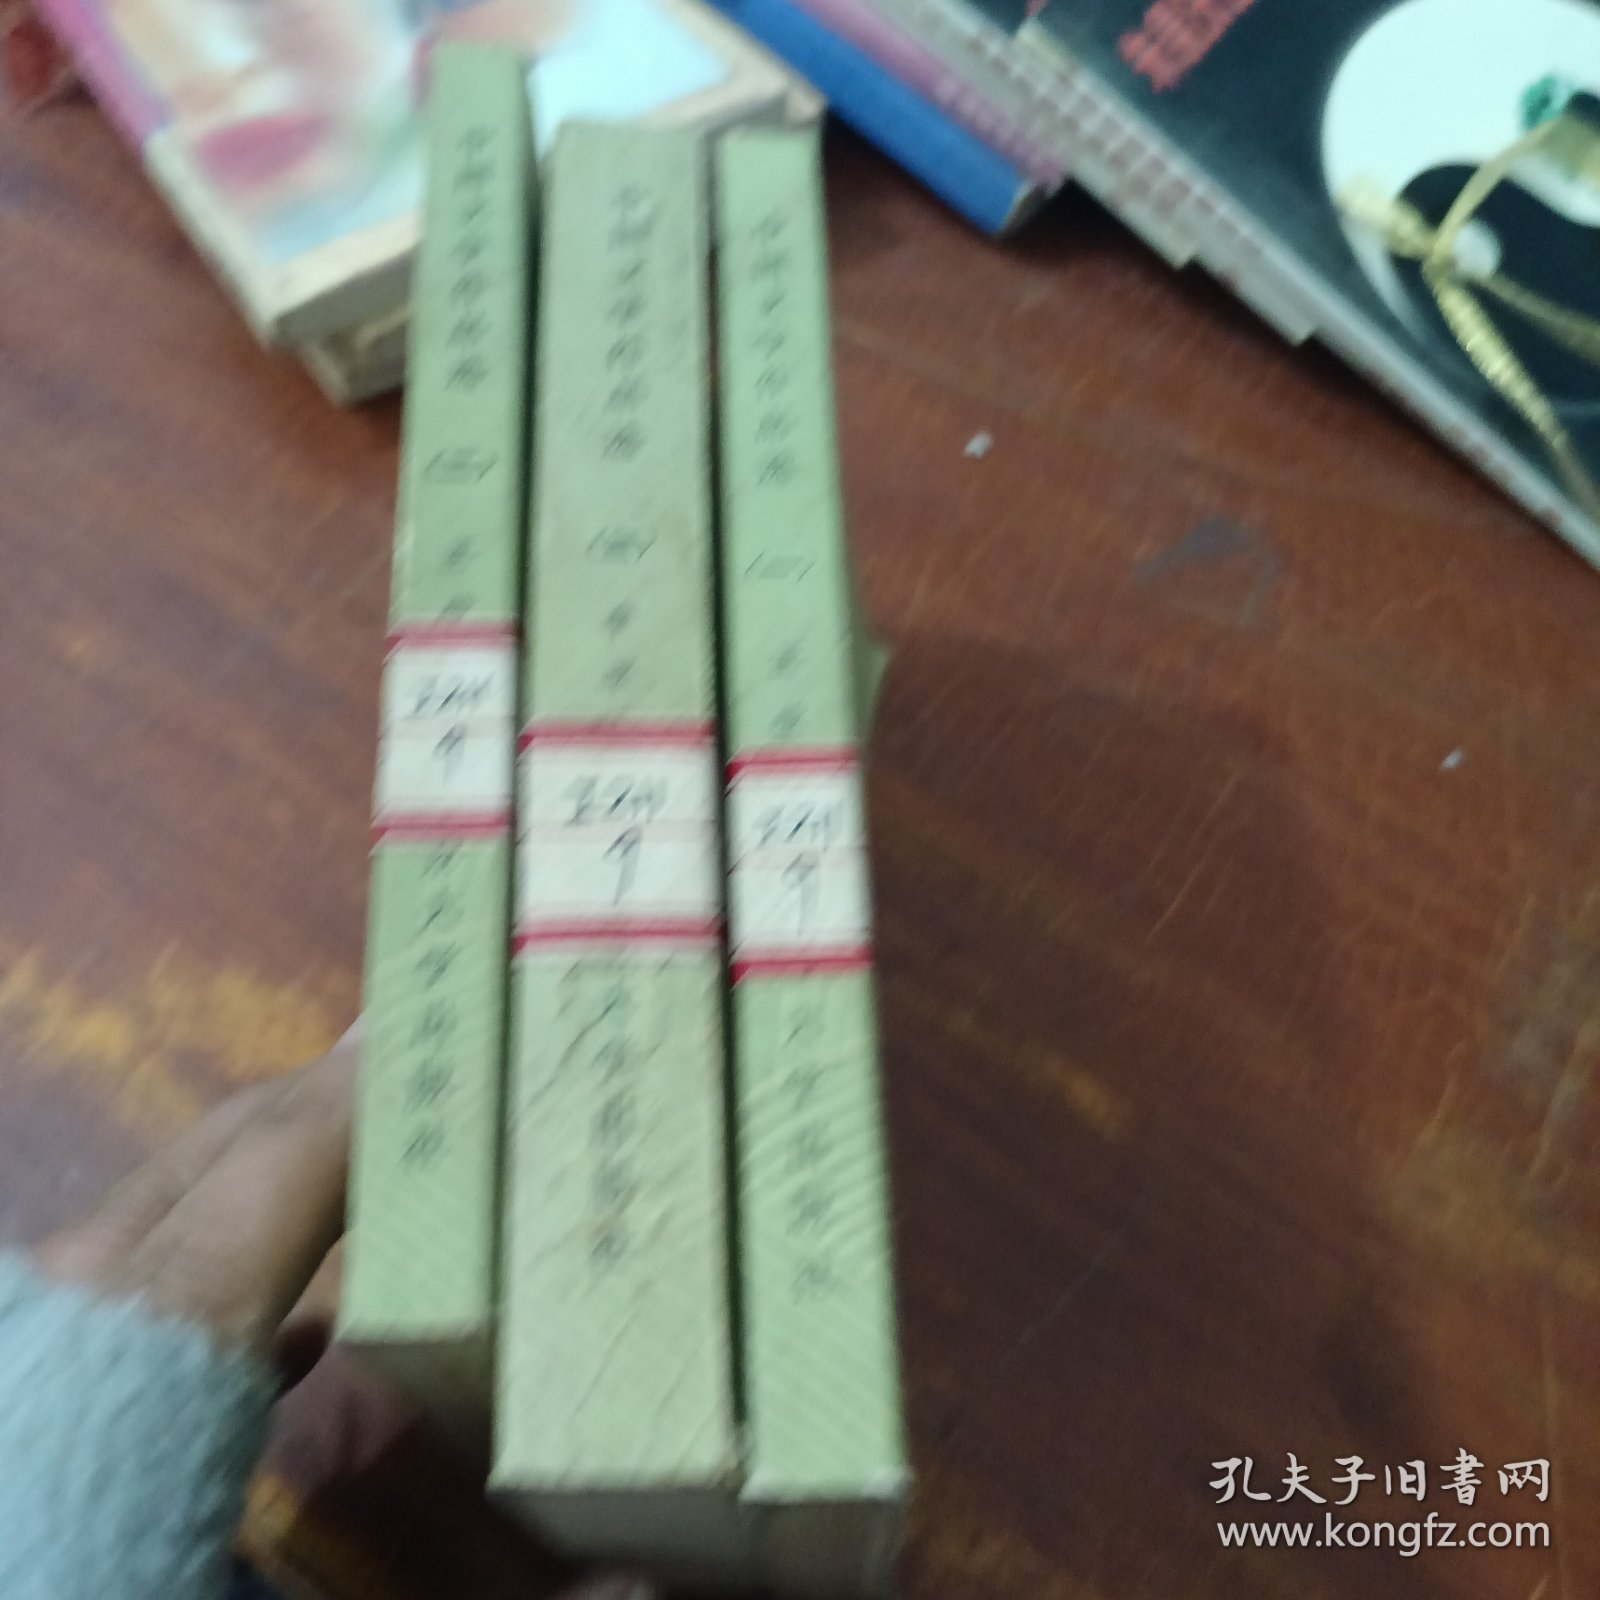 中国文学作品选(一)、(二)古代部分、(三)现代部分3本合售 馆藏